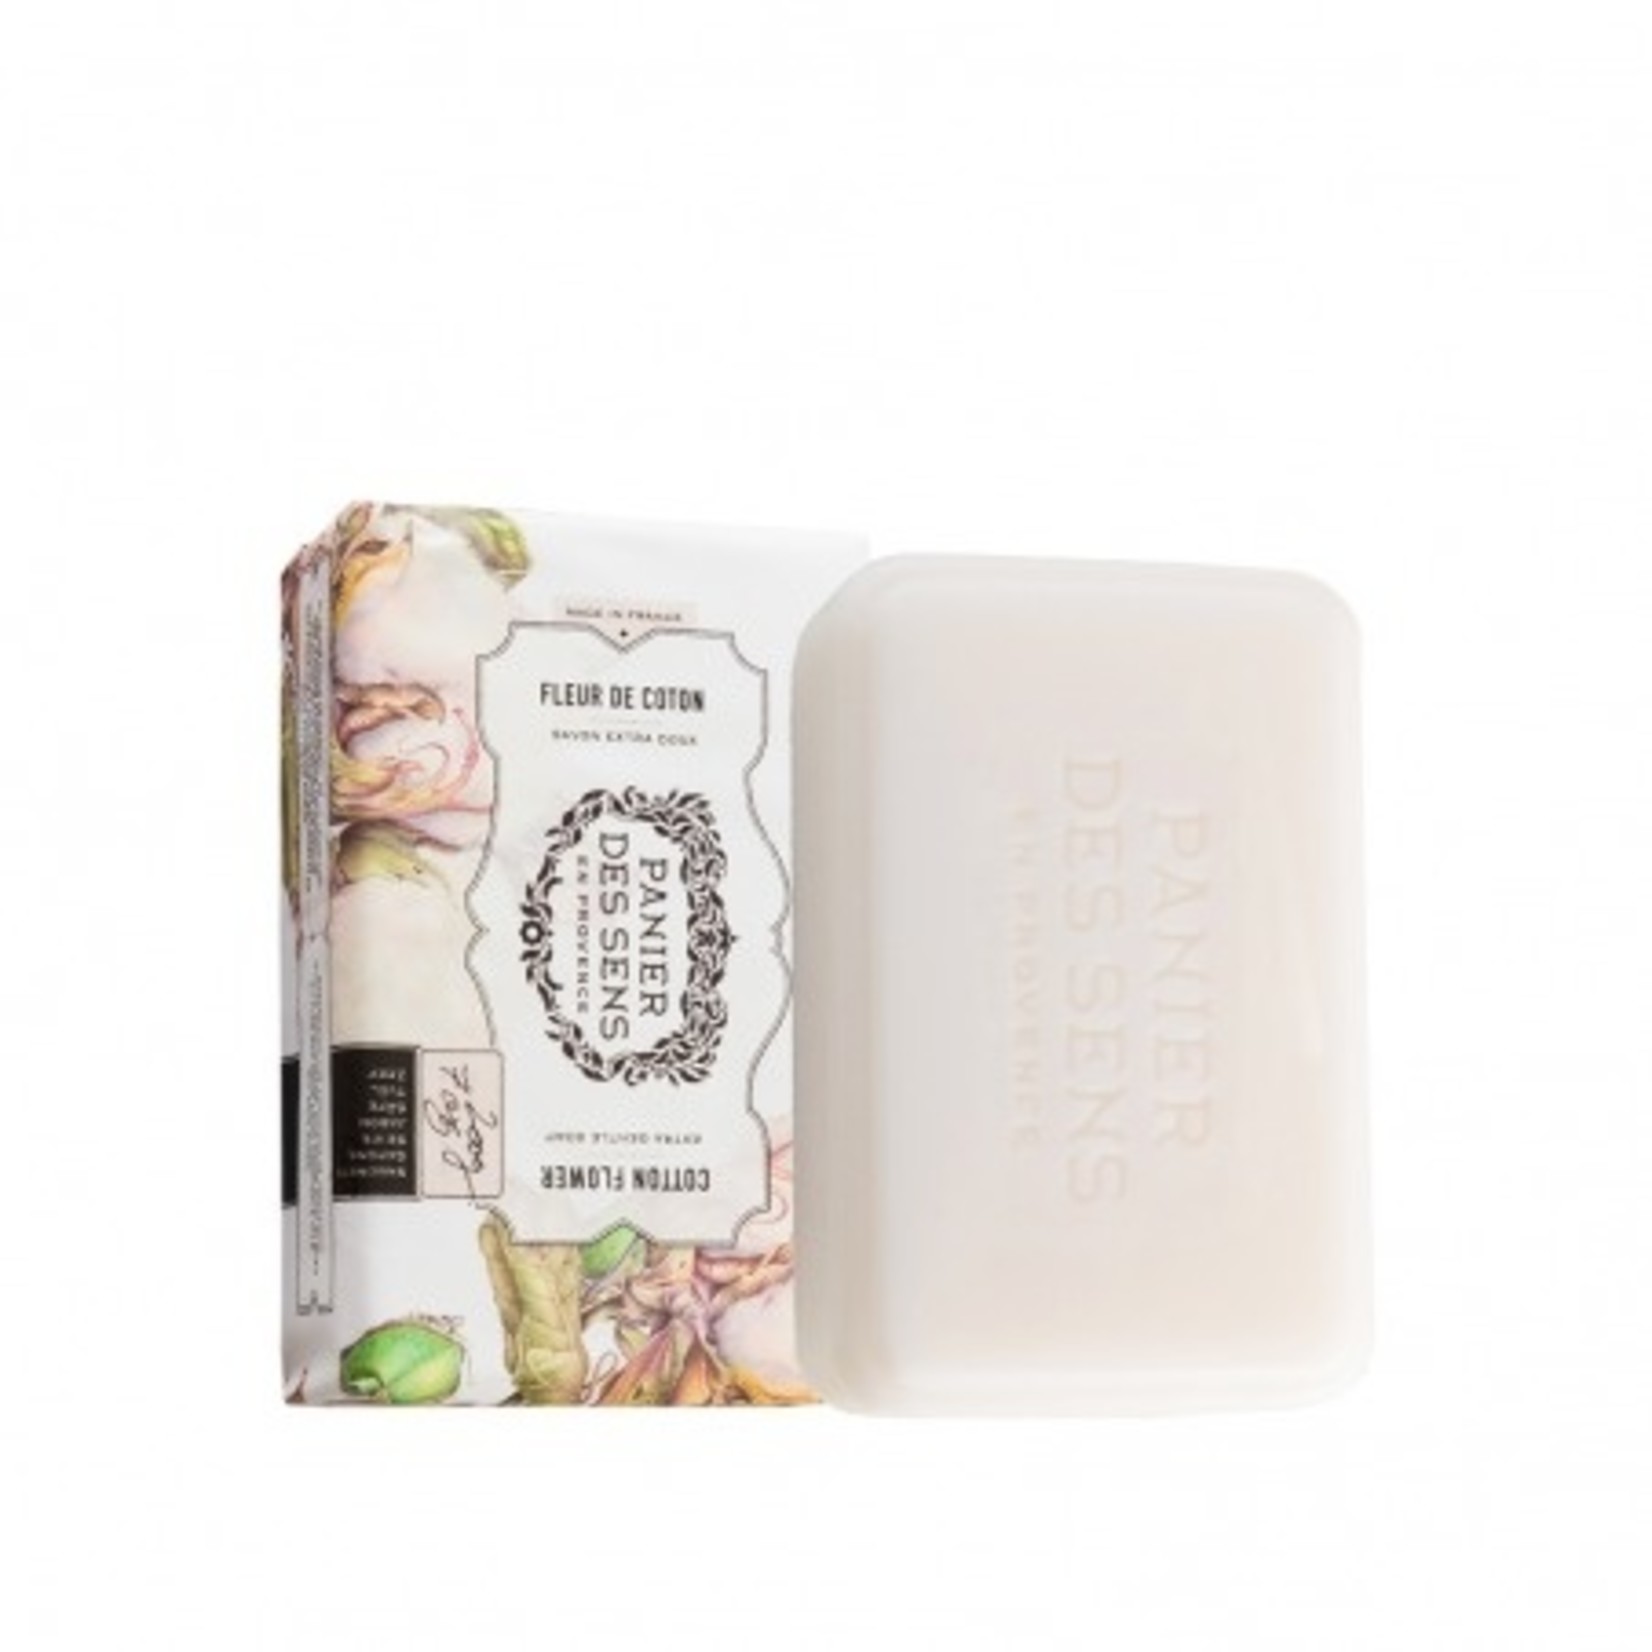 Panier des Sens Extra Gentle Soap (Sheabutter)  - Cotton Flower